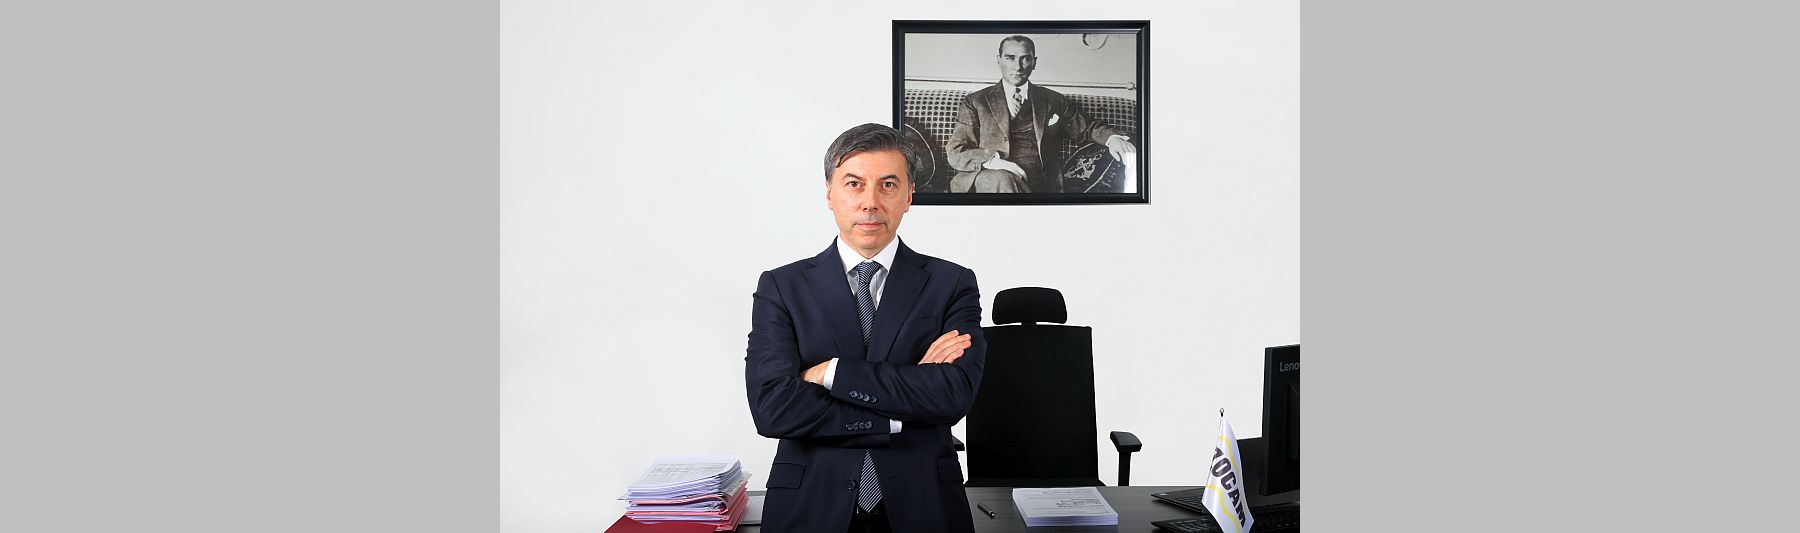 İzocam Genel Direktörü Murat Savcı